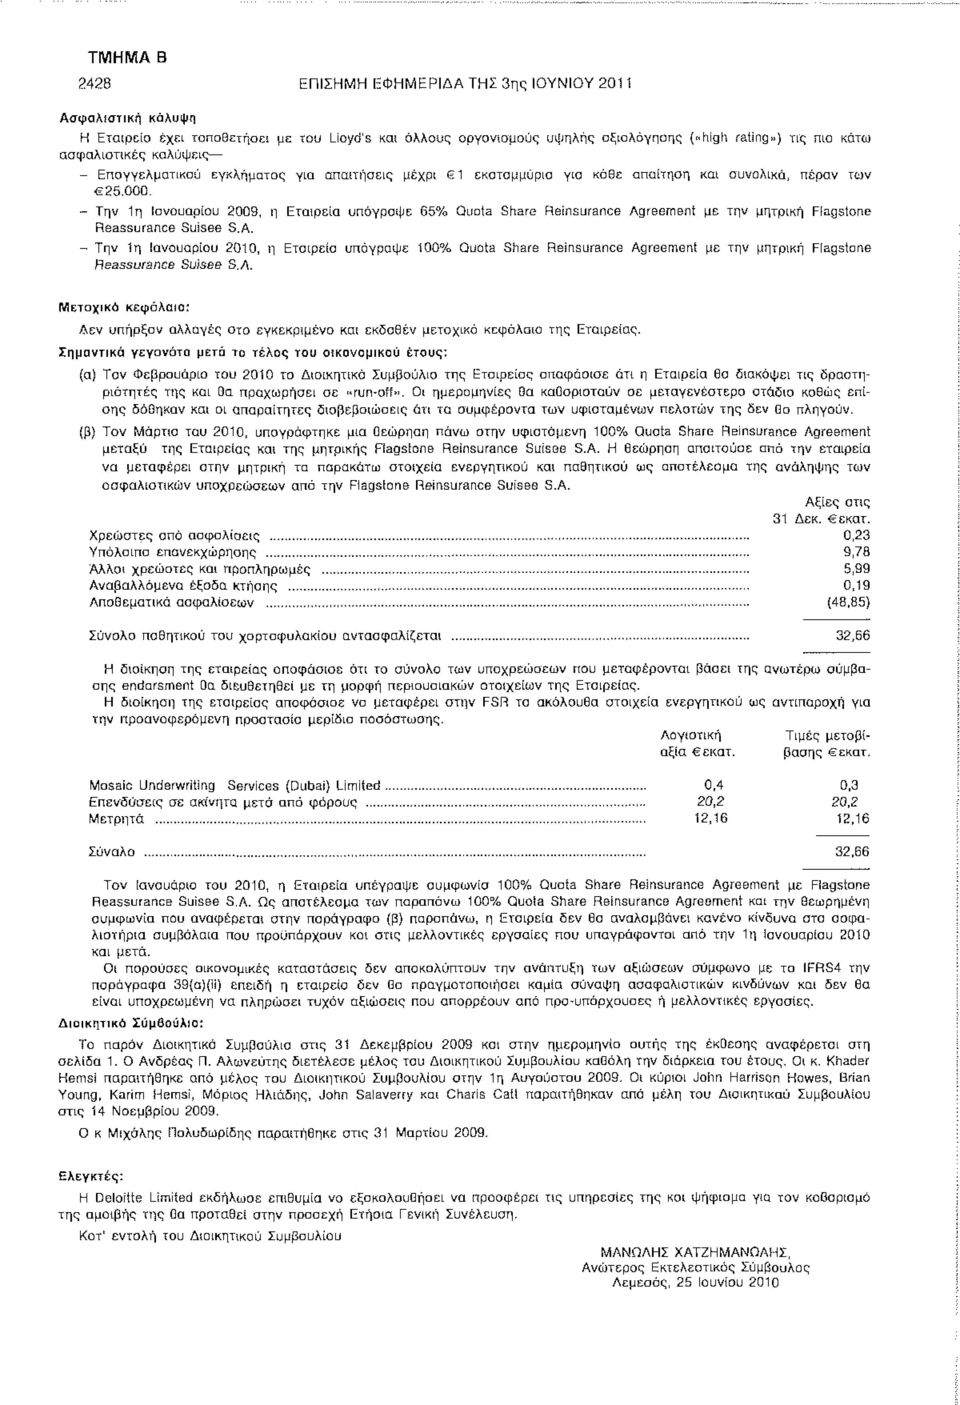 - Την 1η Ιανουαρίου 2009, η Εταιρεία υπόγραψε 65% Quota Share Reinsurance Agreement με την μητρική Flagstone Reassurance Suisee S.A. - Την!